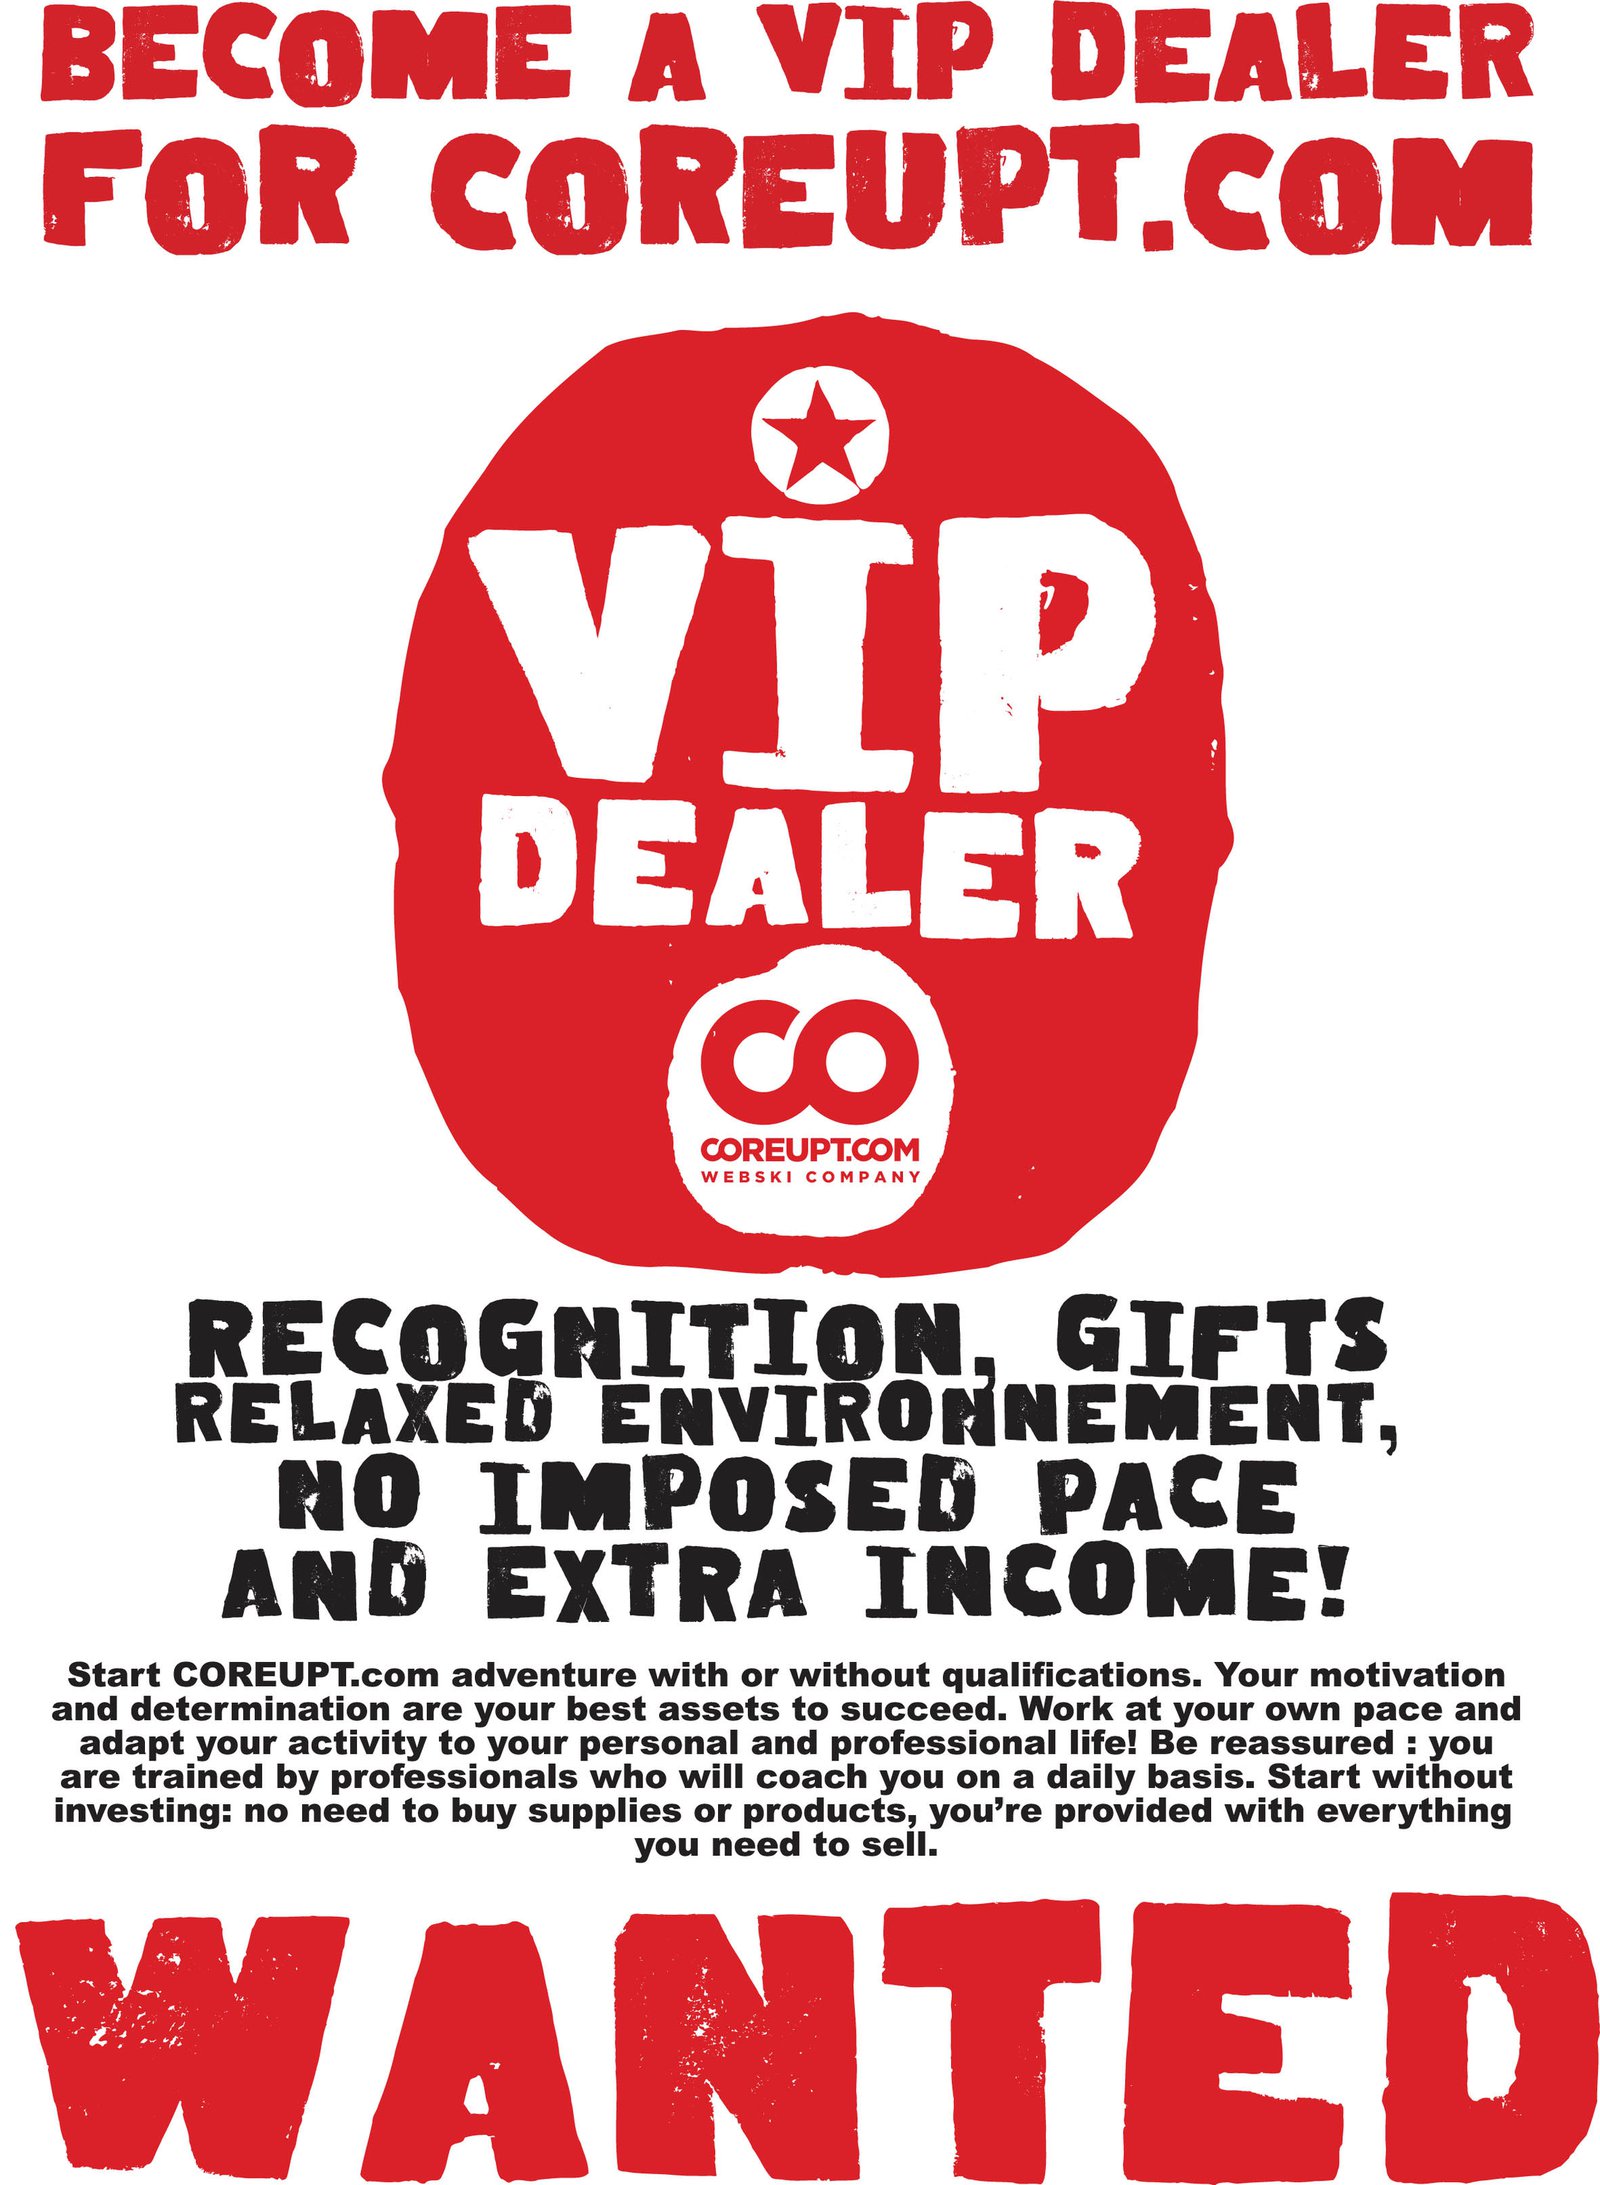 Become a VIP dealer COREUPT.com